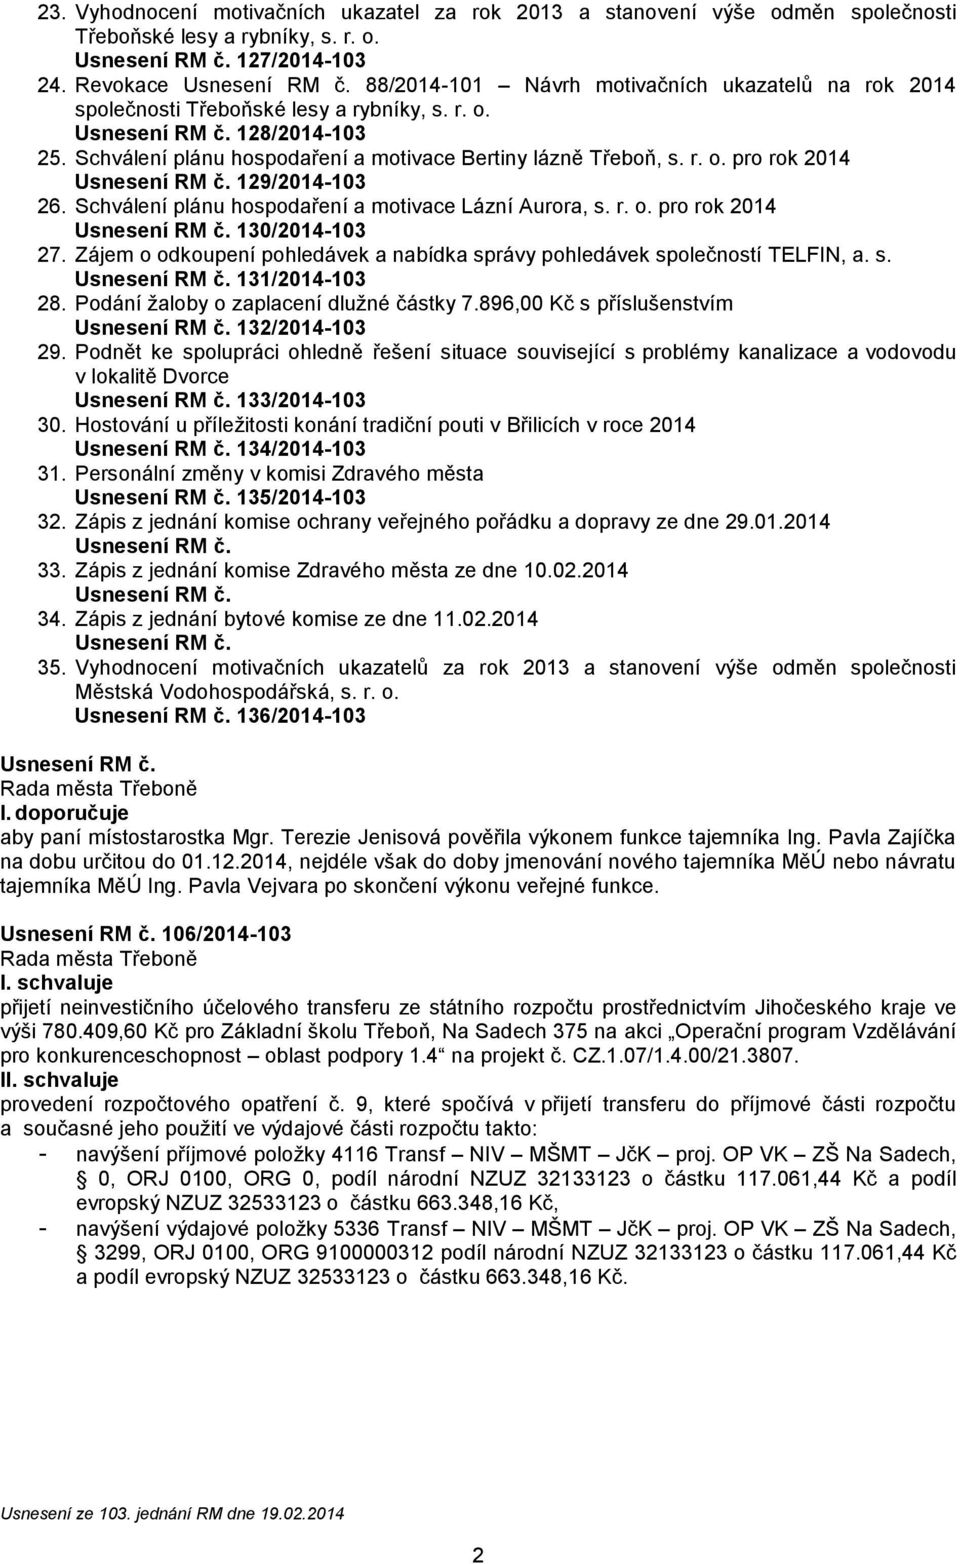 Schválení plánu hospodaření a motivace Lázní Aurora, s. r. o. pro rok 2014 130/2014-103 27. Zájem o odkoupení pohledávek a nabídka správy pohledávek společností TELFIN, a. s. 131/2014-103 28.